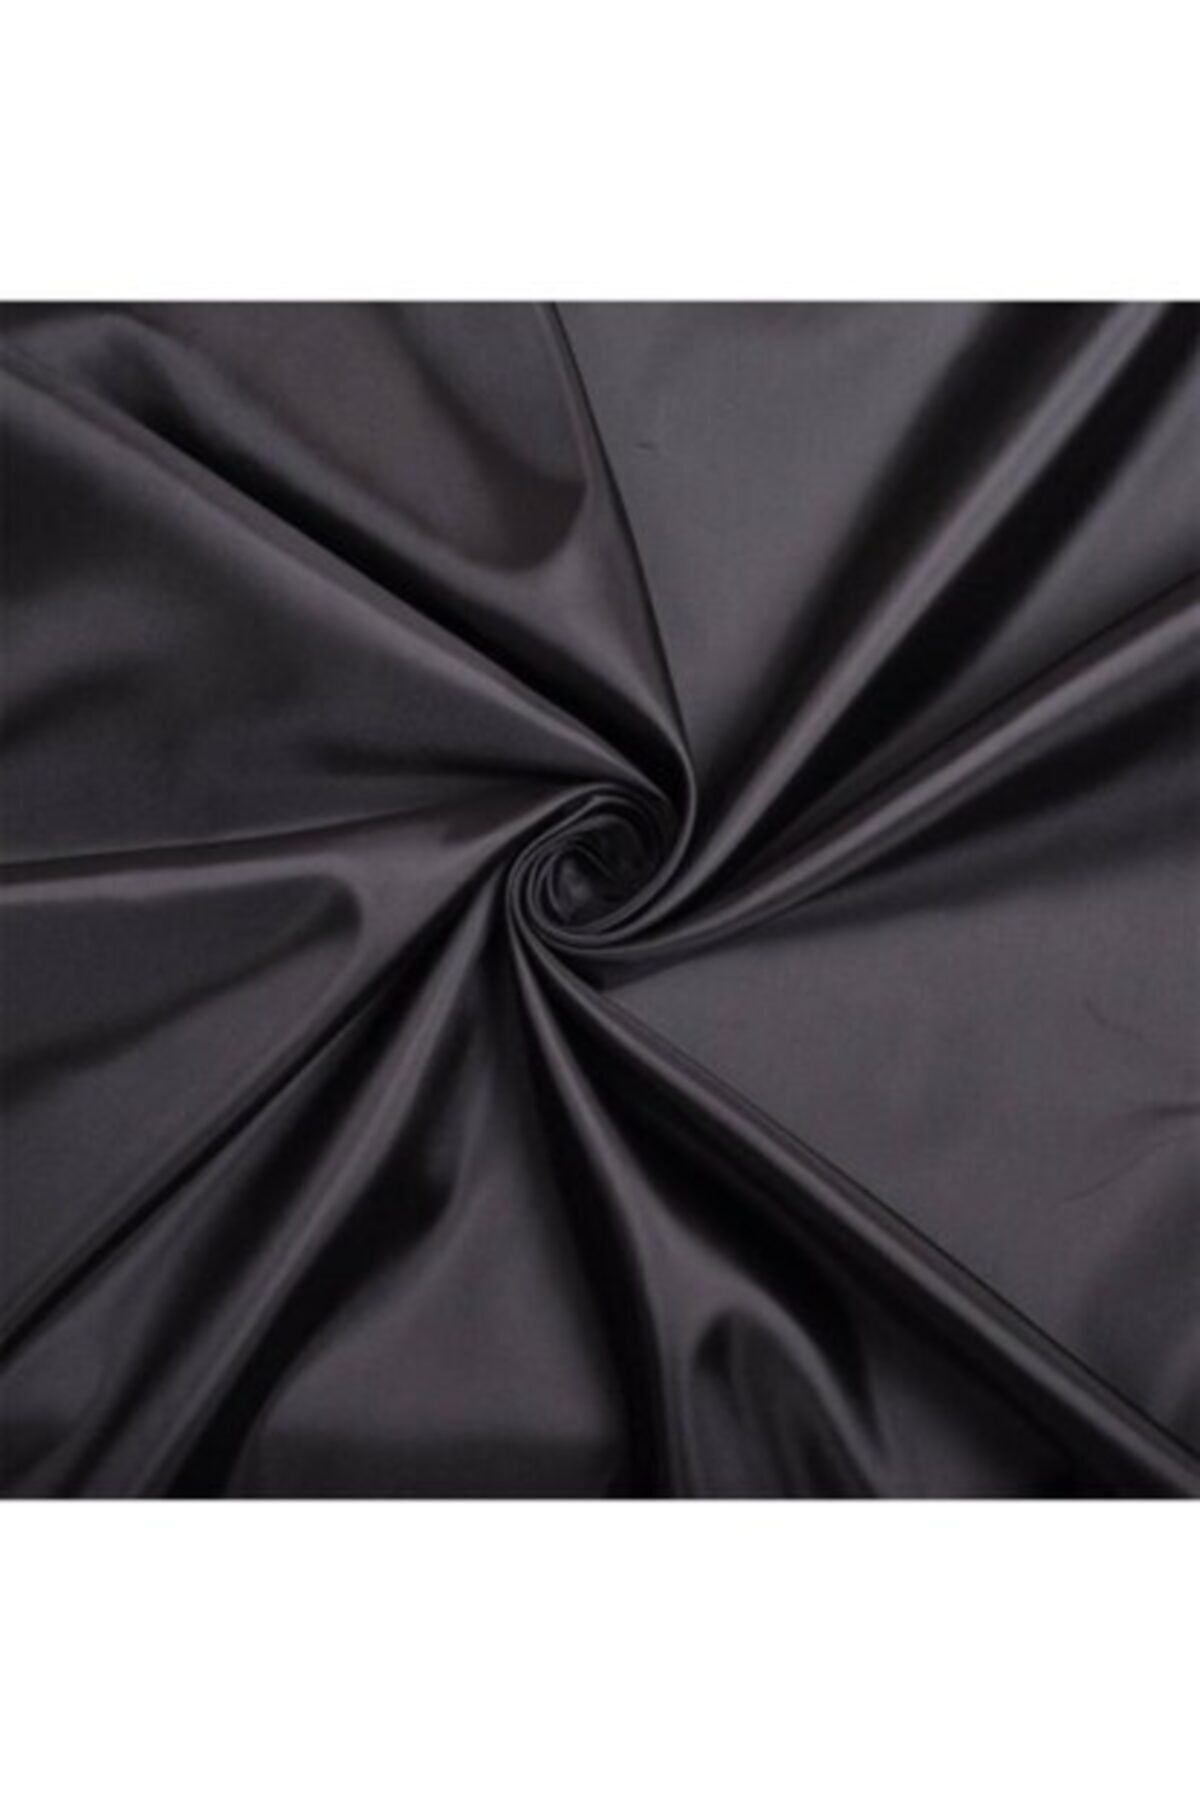 Nadirzade Kumaşçılık Elbiselik/astarlık Ince Likra Siyah Saten(150 CM ENİNDE)